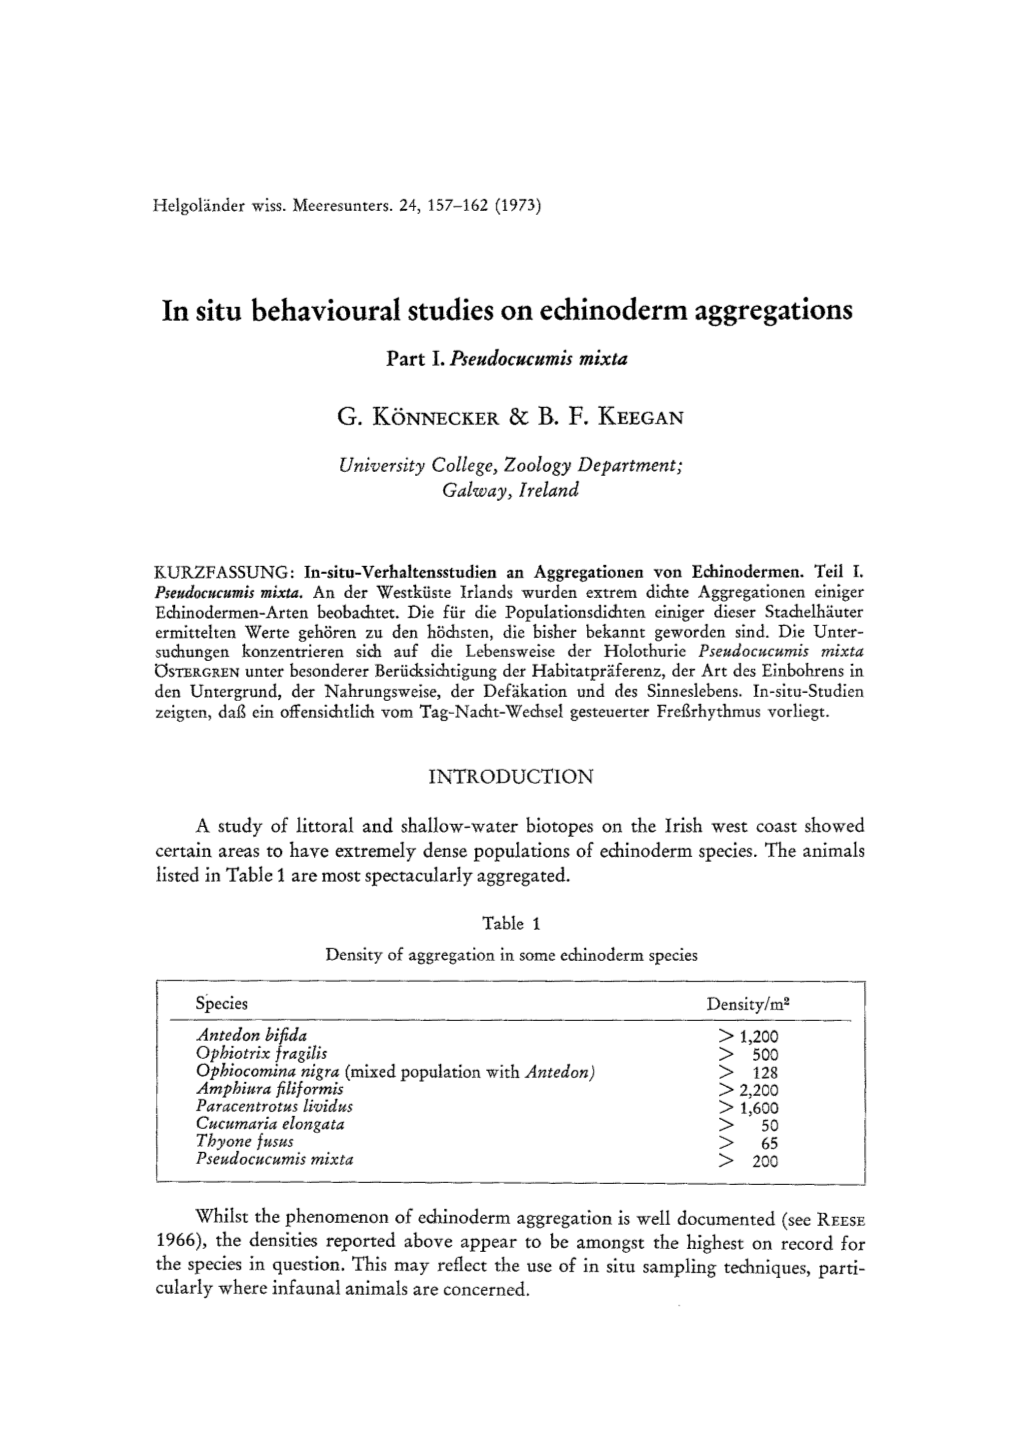 In Situ Behavioural Studies on Echinoderm Aggregations